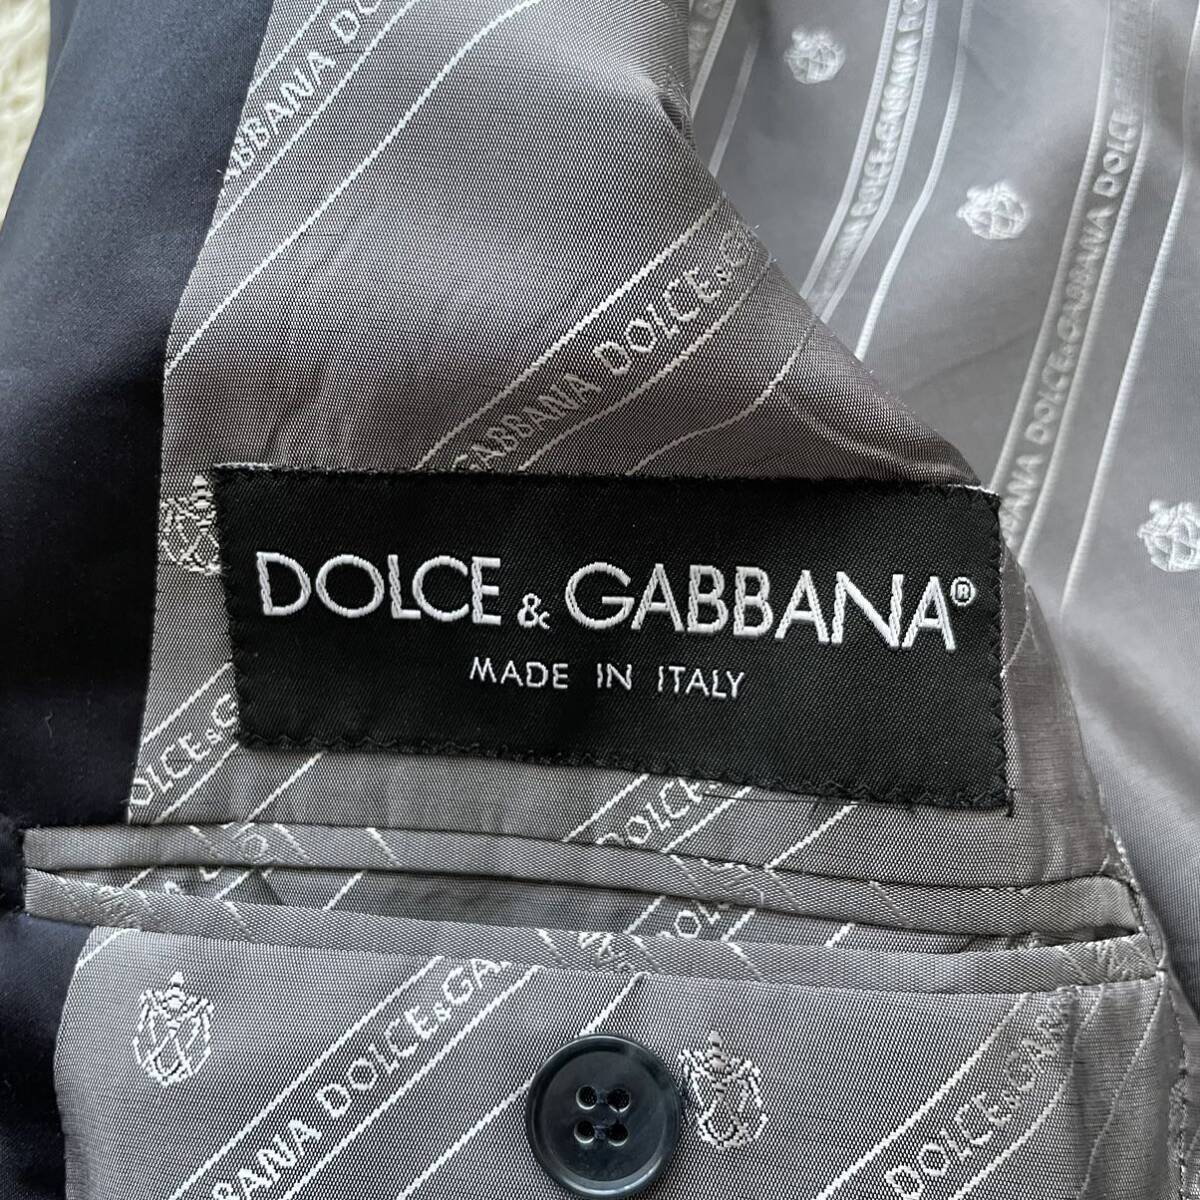  Dolce & Gabbana [ глянец . выпускает ощущение роскоши ]DOLCE&GABBANA tailored jacket подкладка монограмма смокинг M размер соответствует темный темно-синий серия 